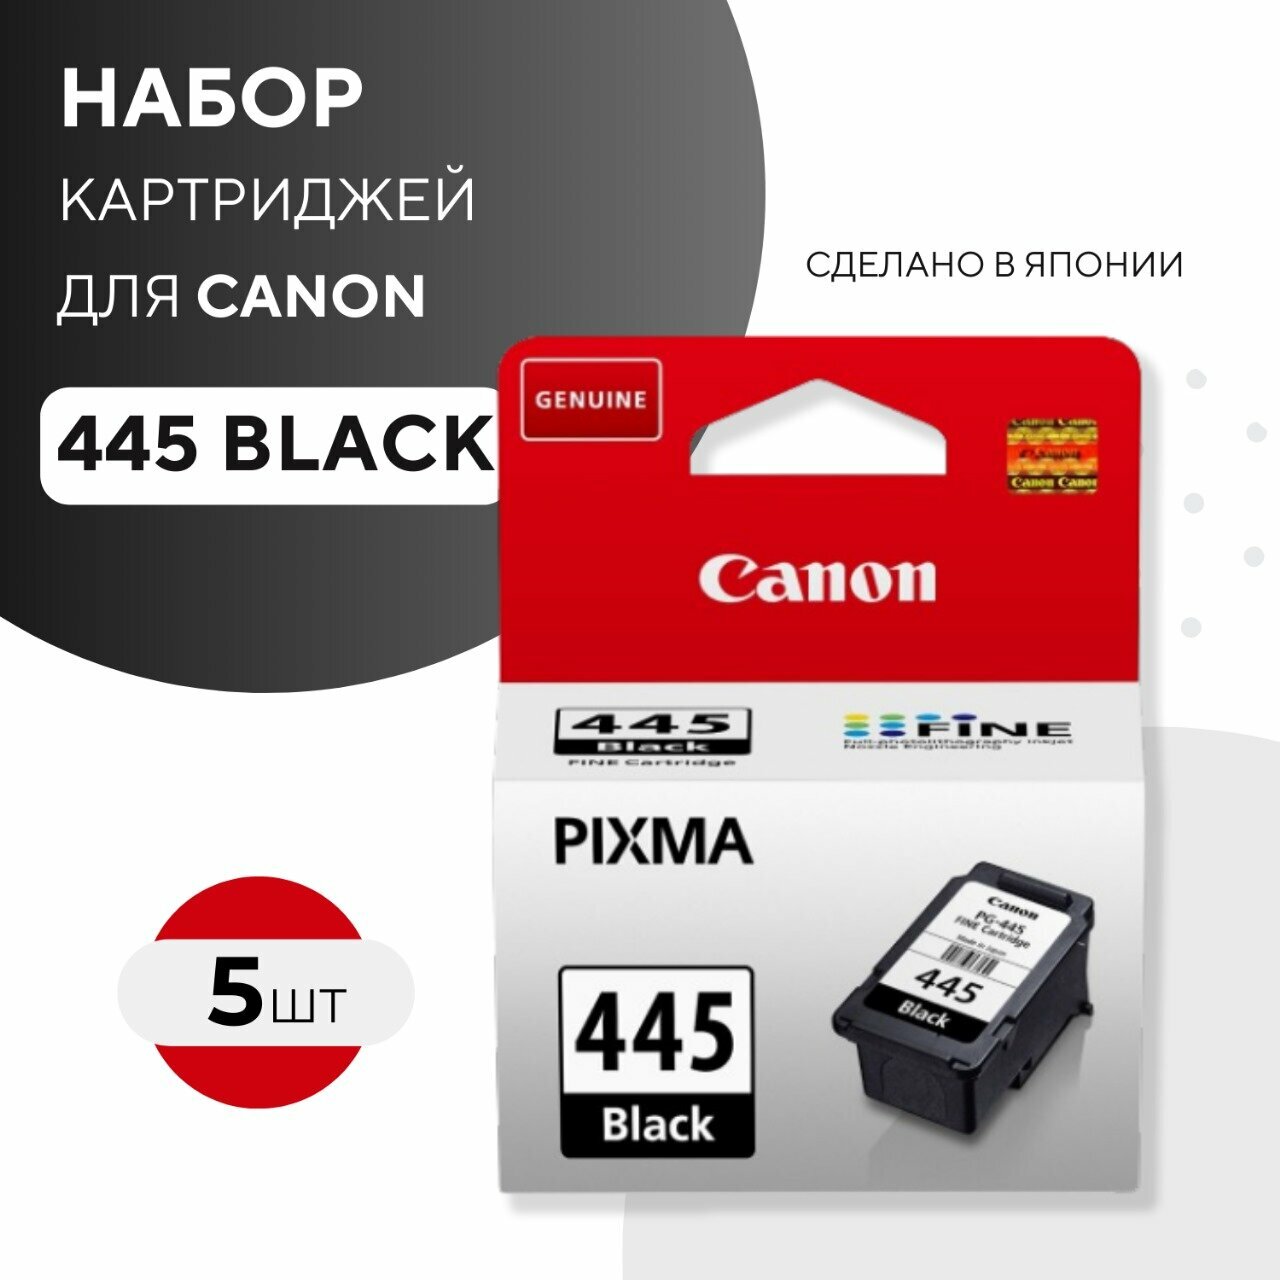 Набор картриджей Canon PG-445 (8283B001) черный, 5 шт